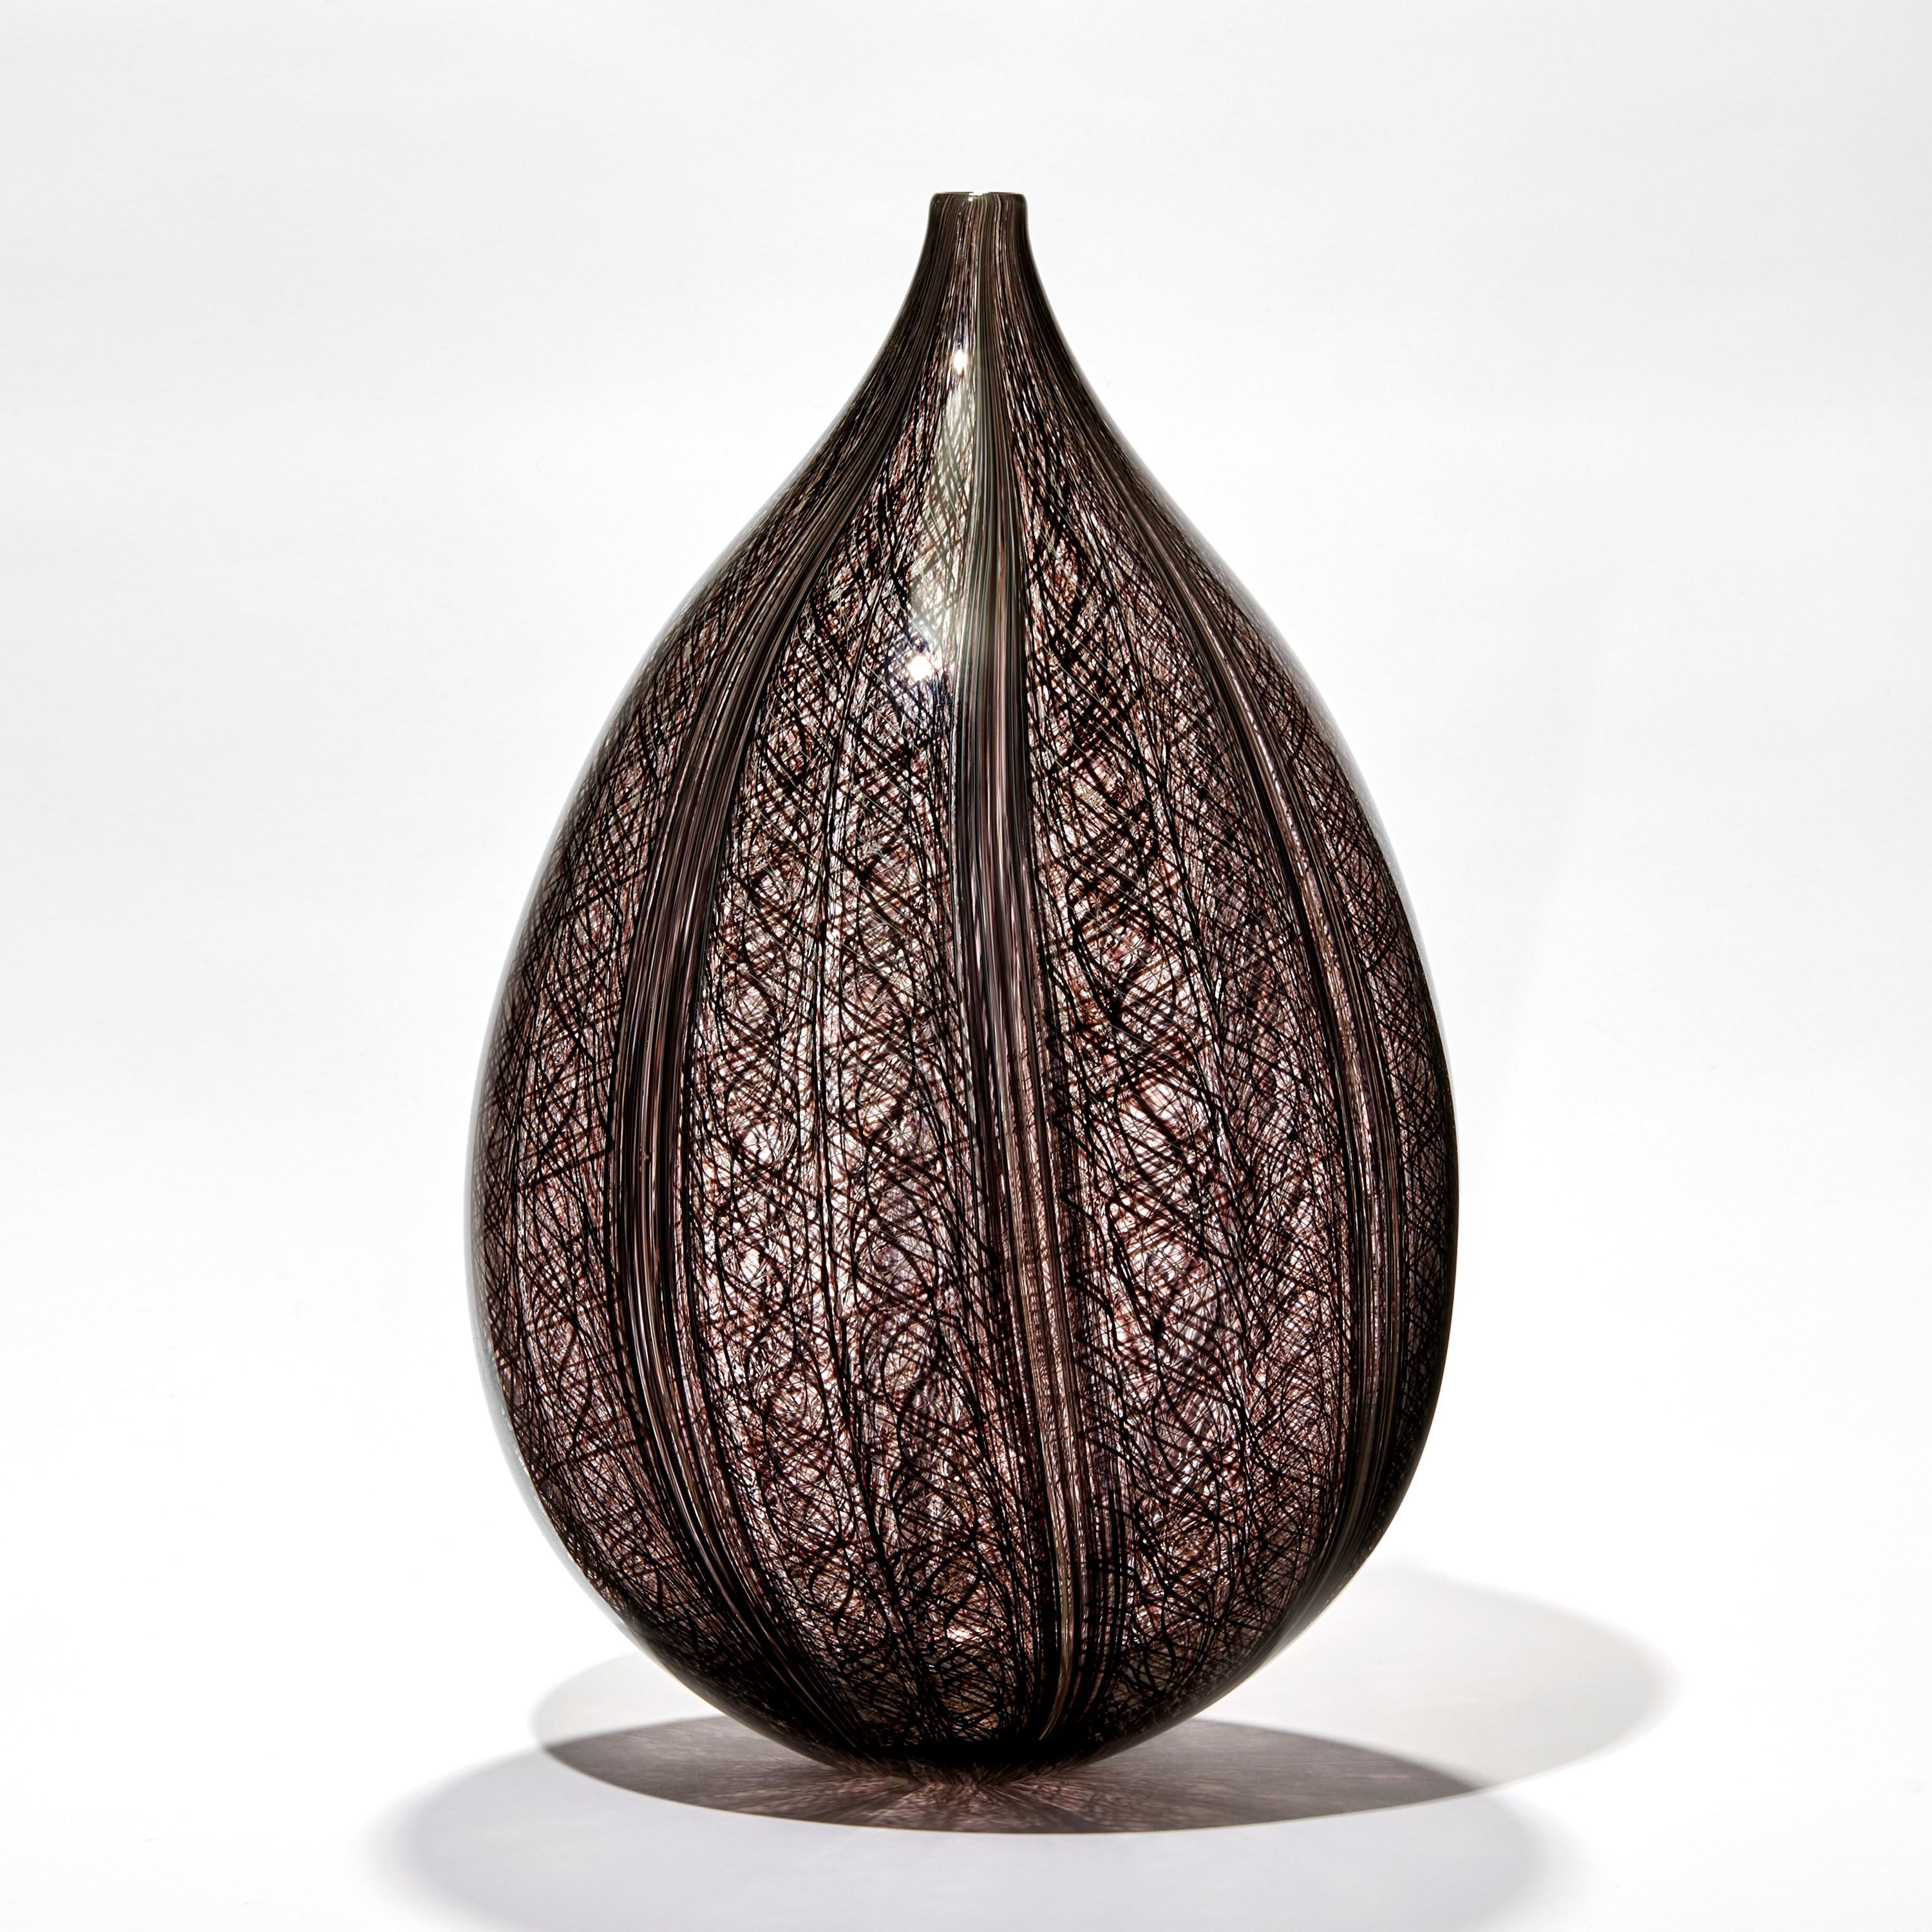 Threads IV est une sculpture unique en verre soufflé à la main, transparent et aubergine/brun foncé, réalisée par l'artiste suédoise Ann Wåhlström. Créé pour former une élégante forme de goutte d'eau, se terminant par un col fin et raffiné, de très